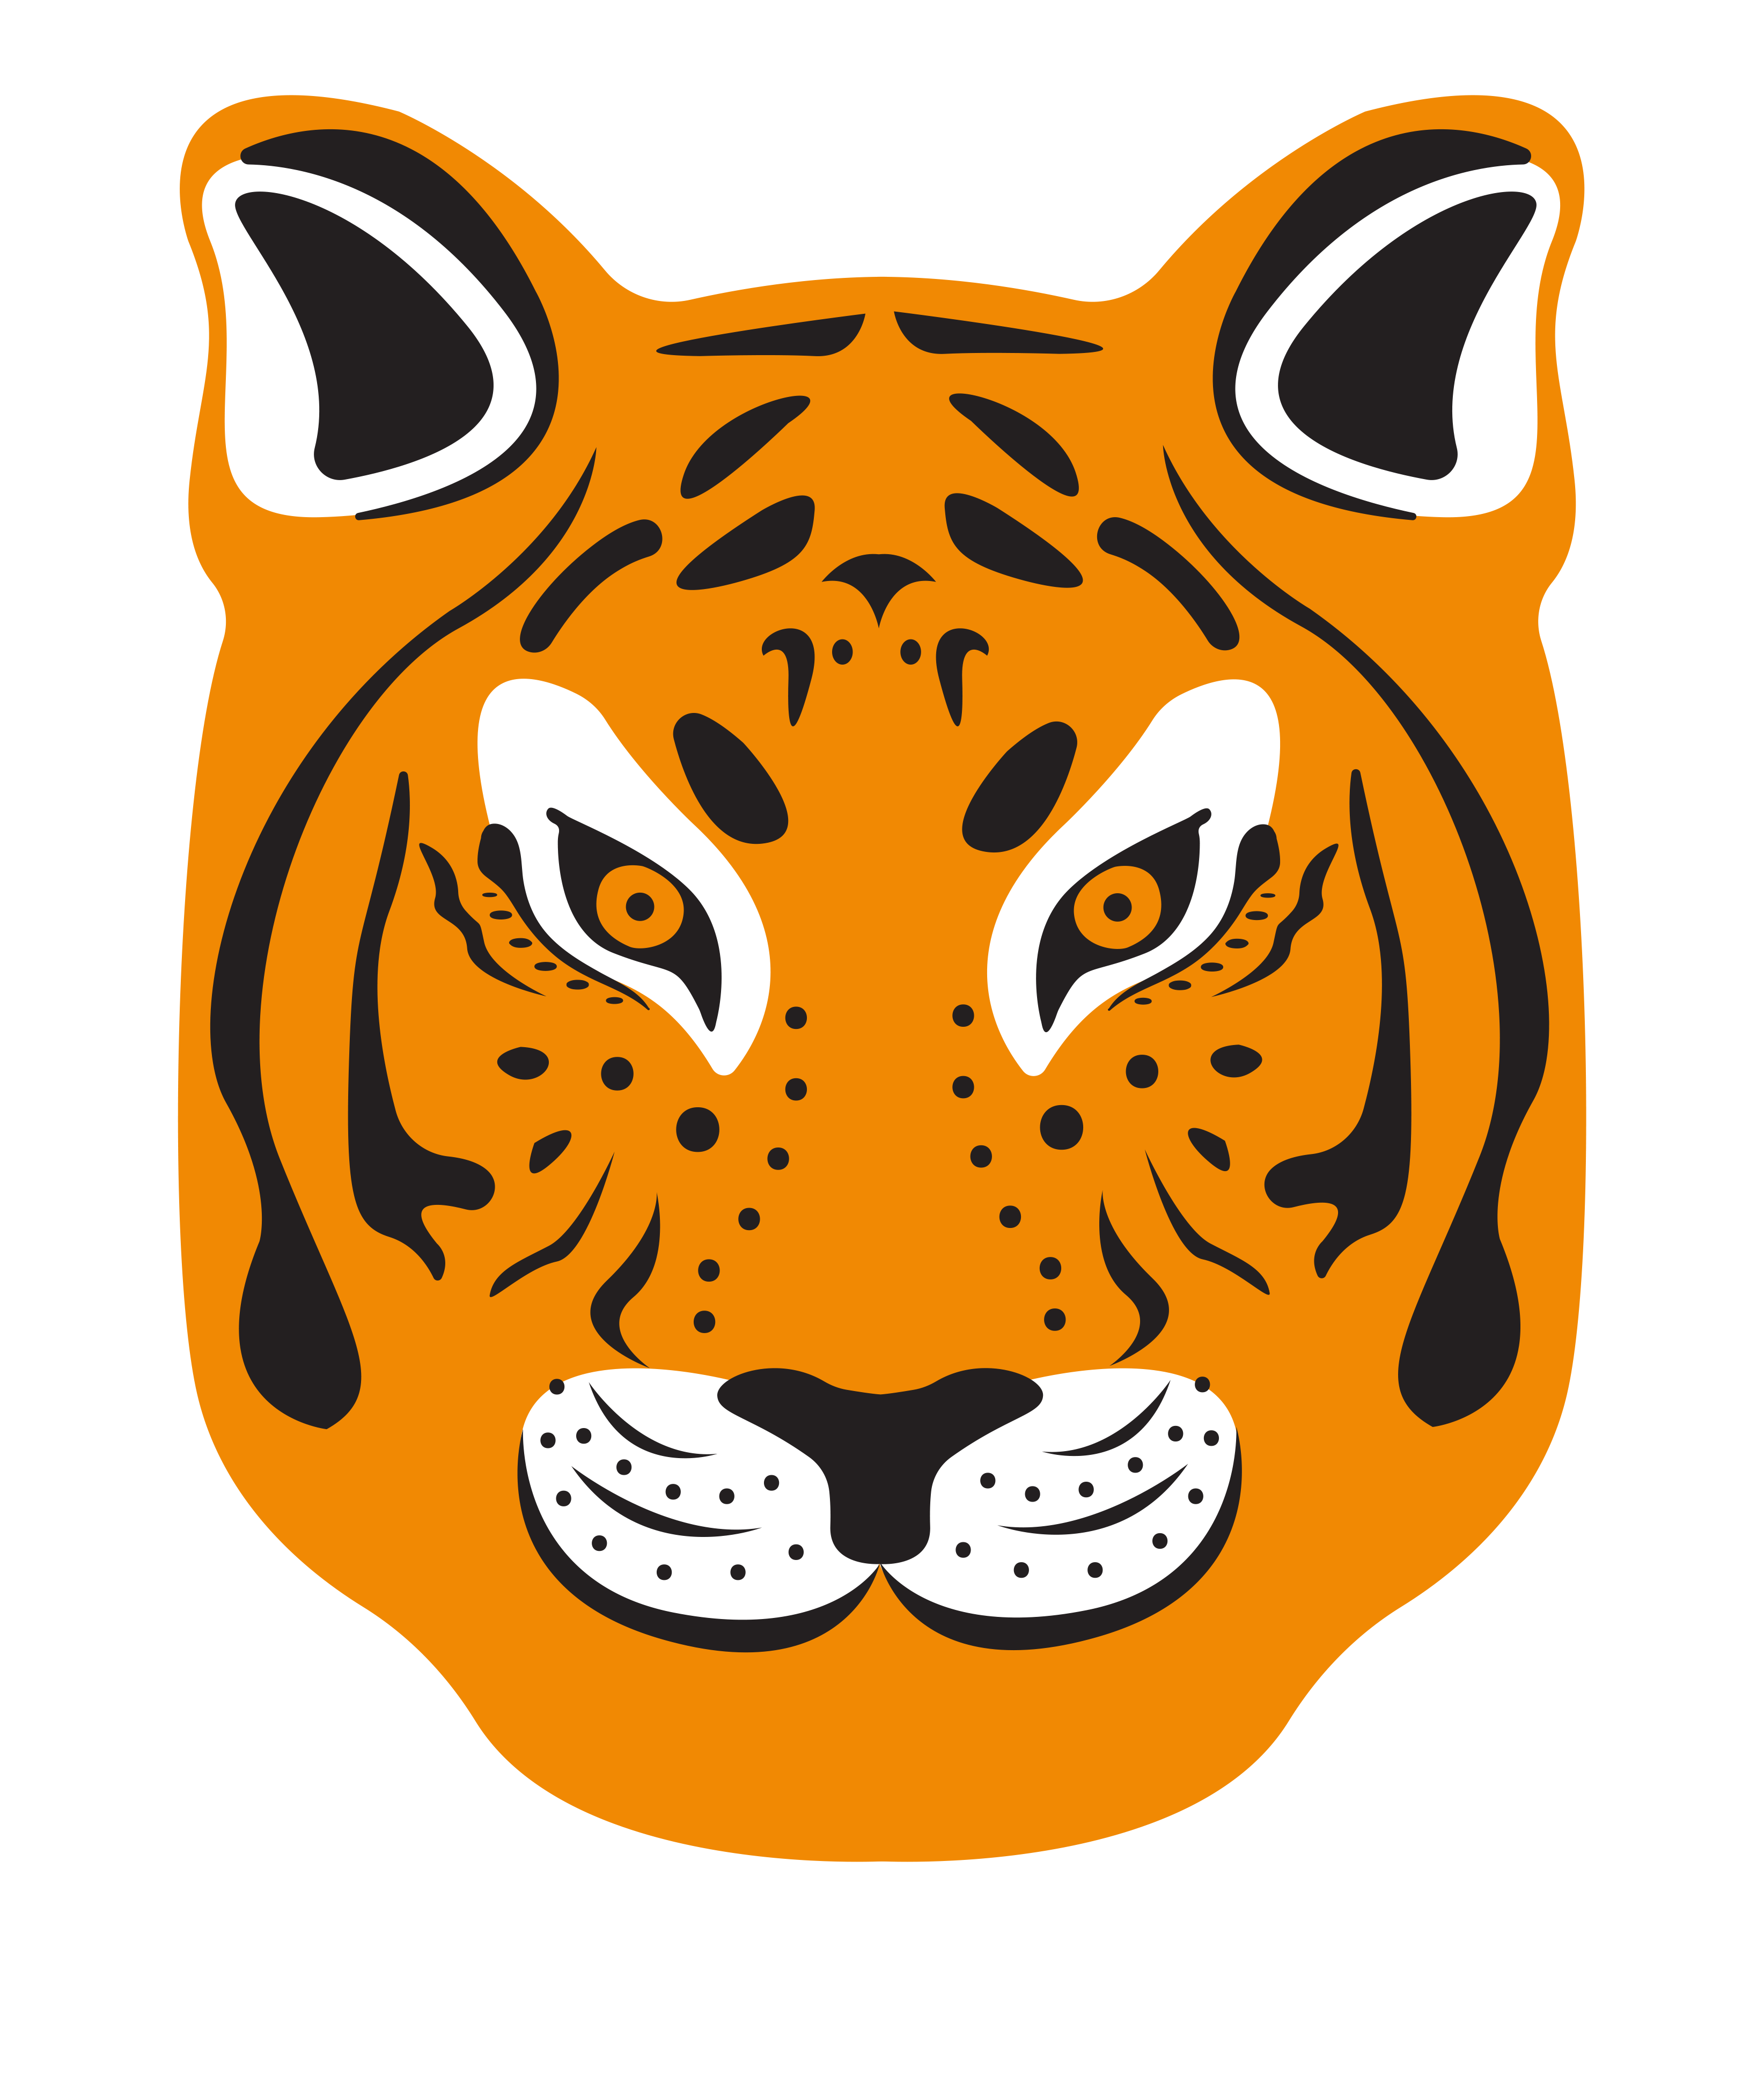 Tiger face vector design